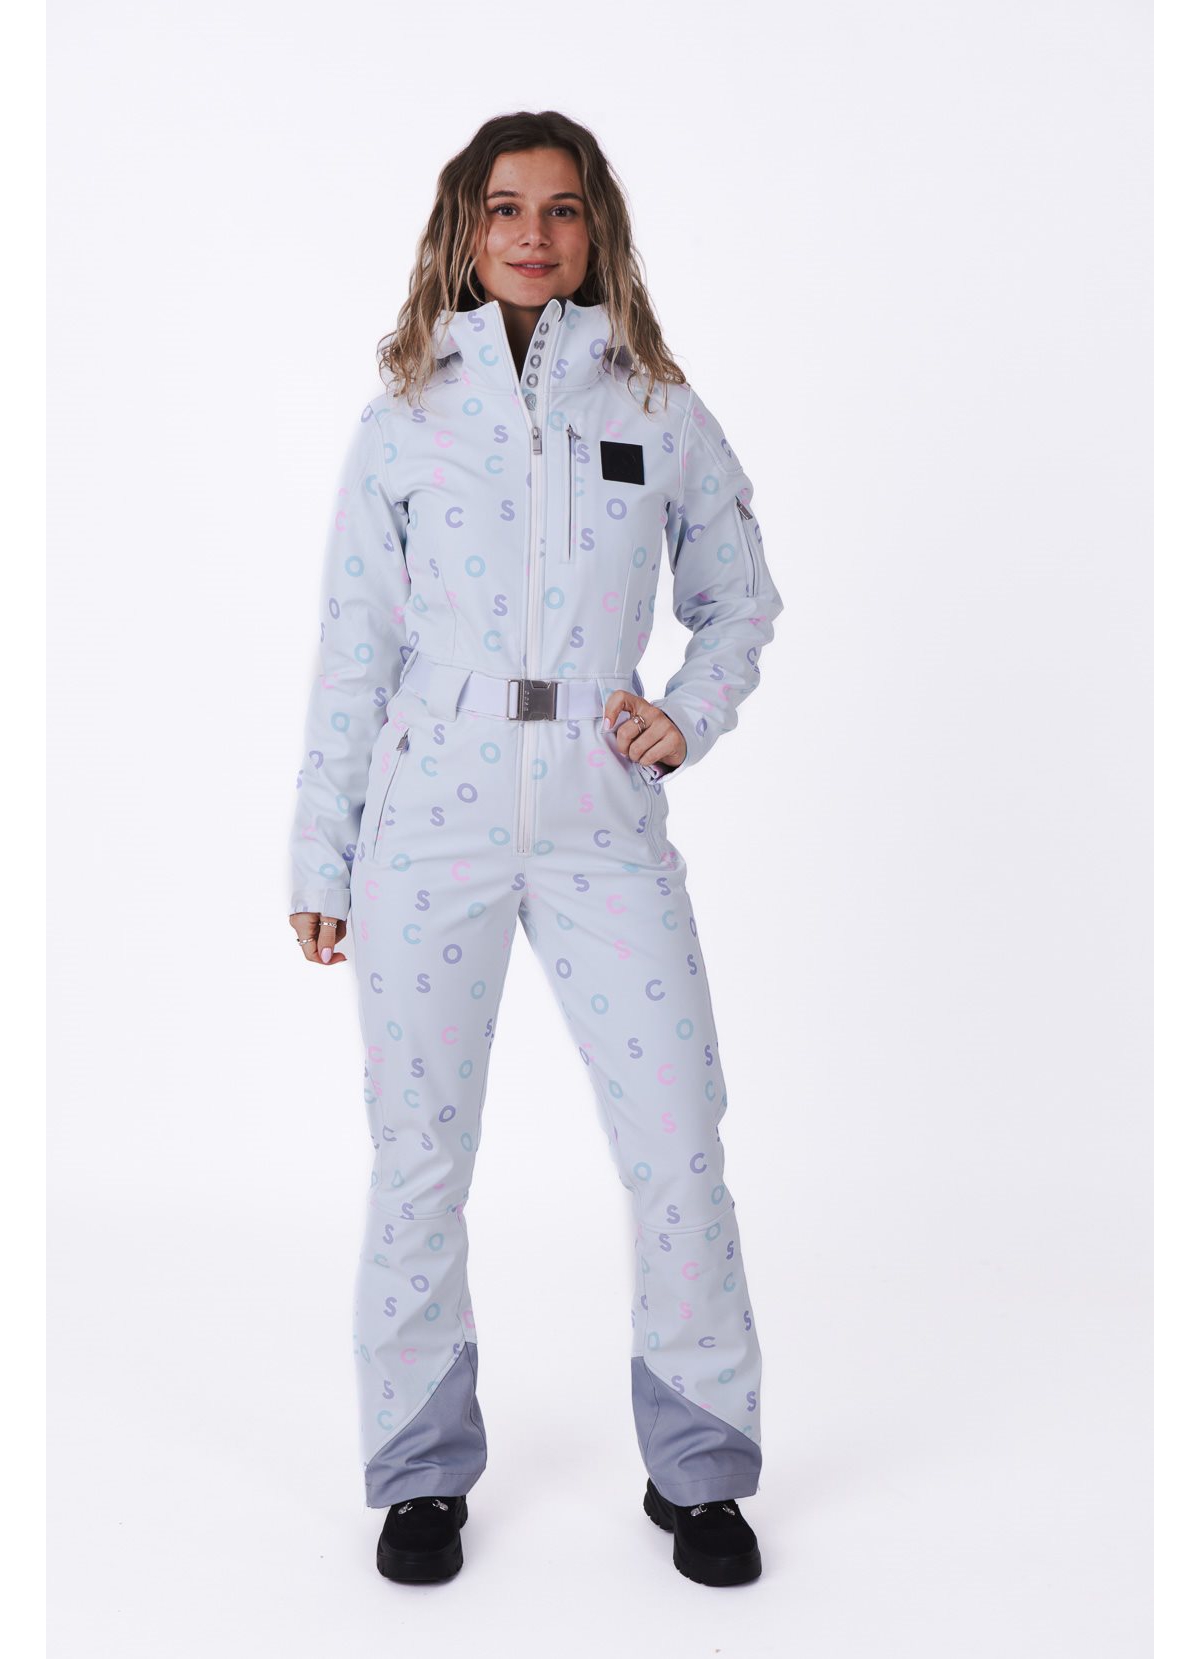 Women's White Oosc Print Chic Ski Suit - White